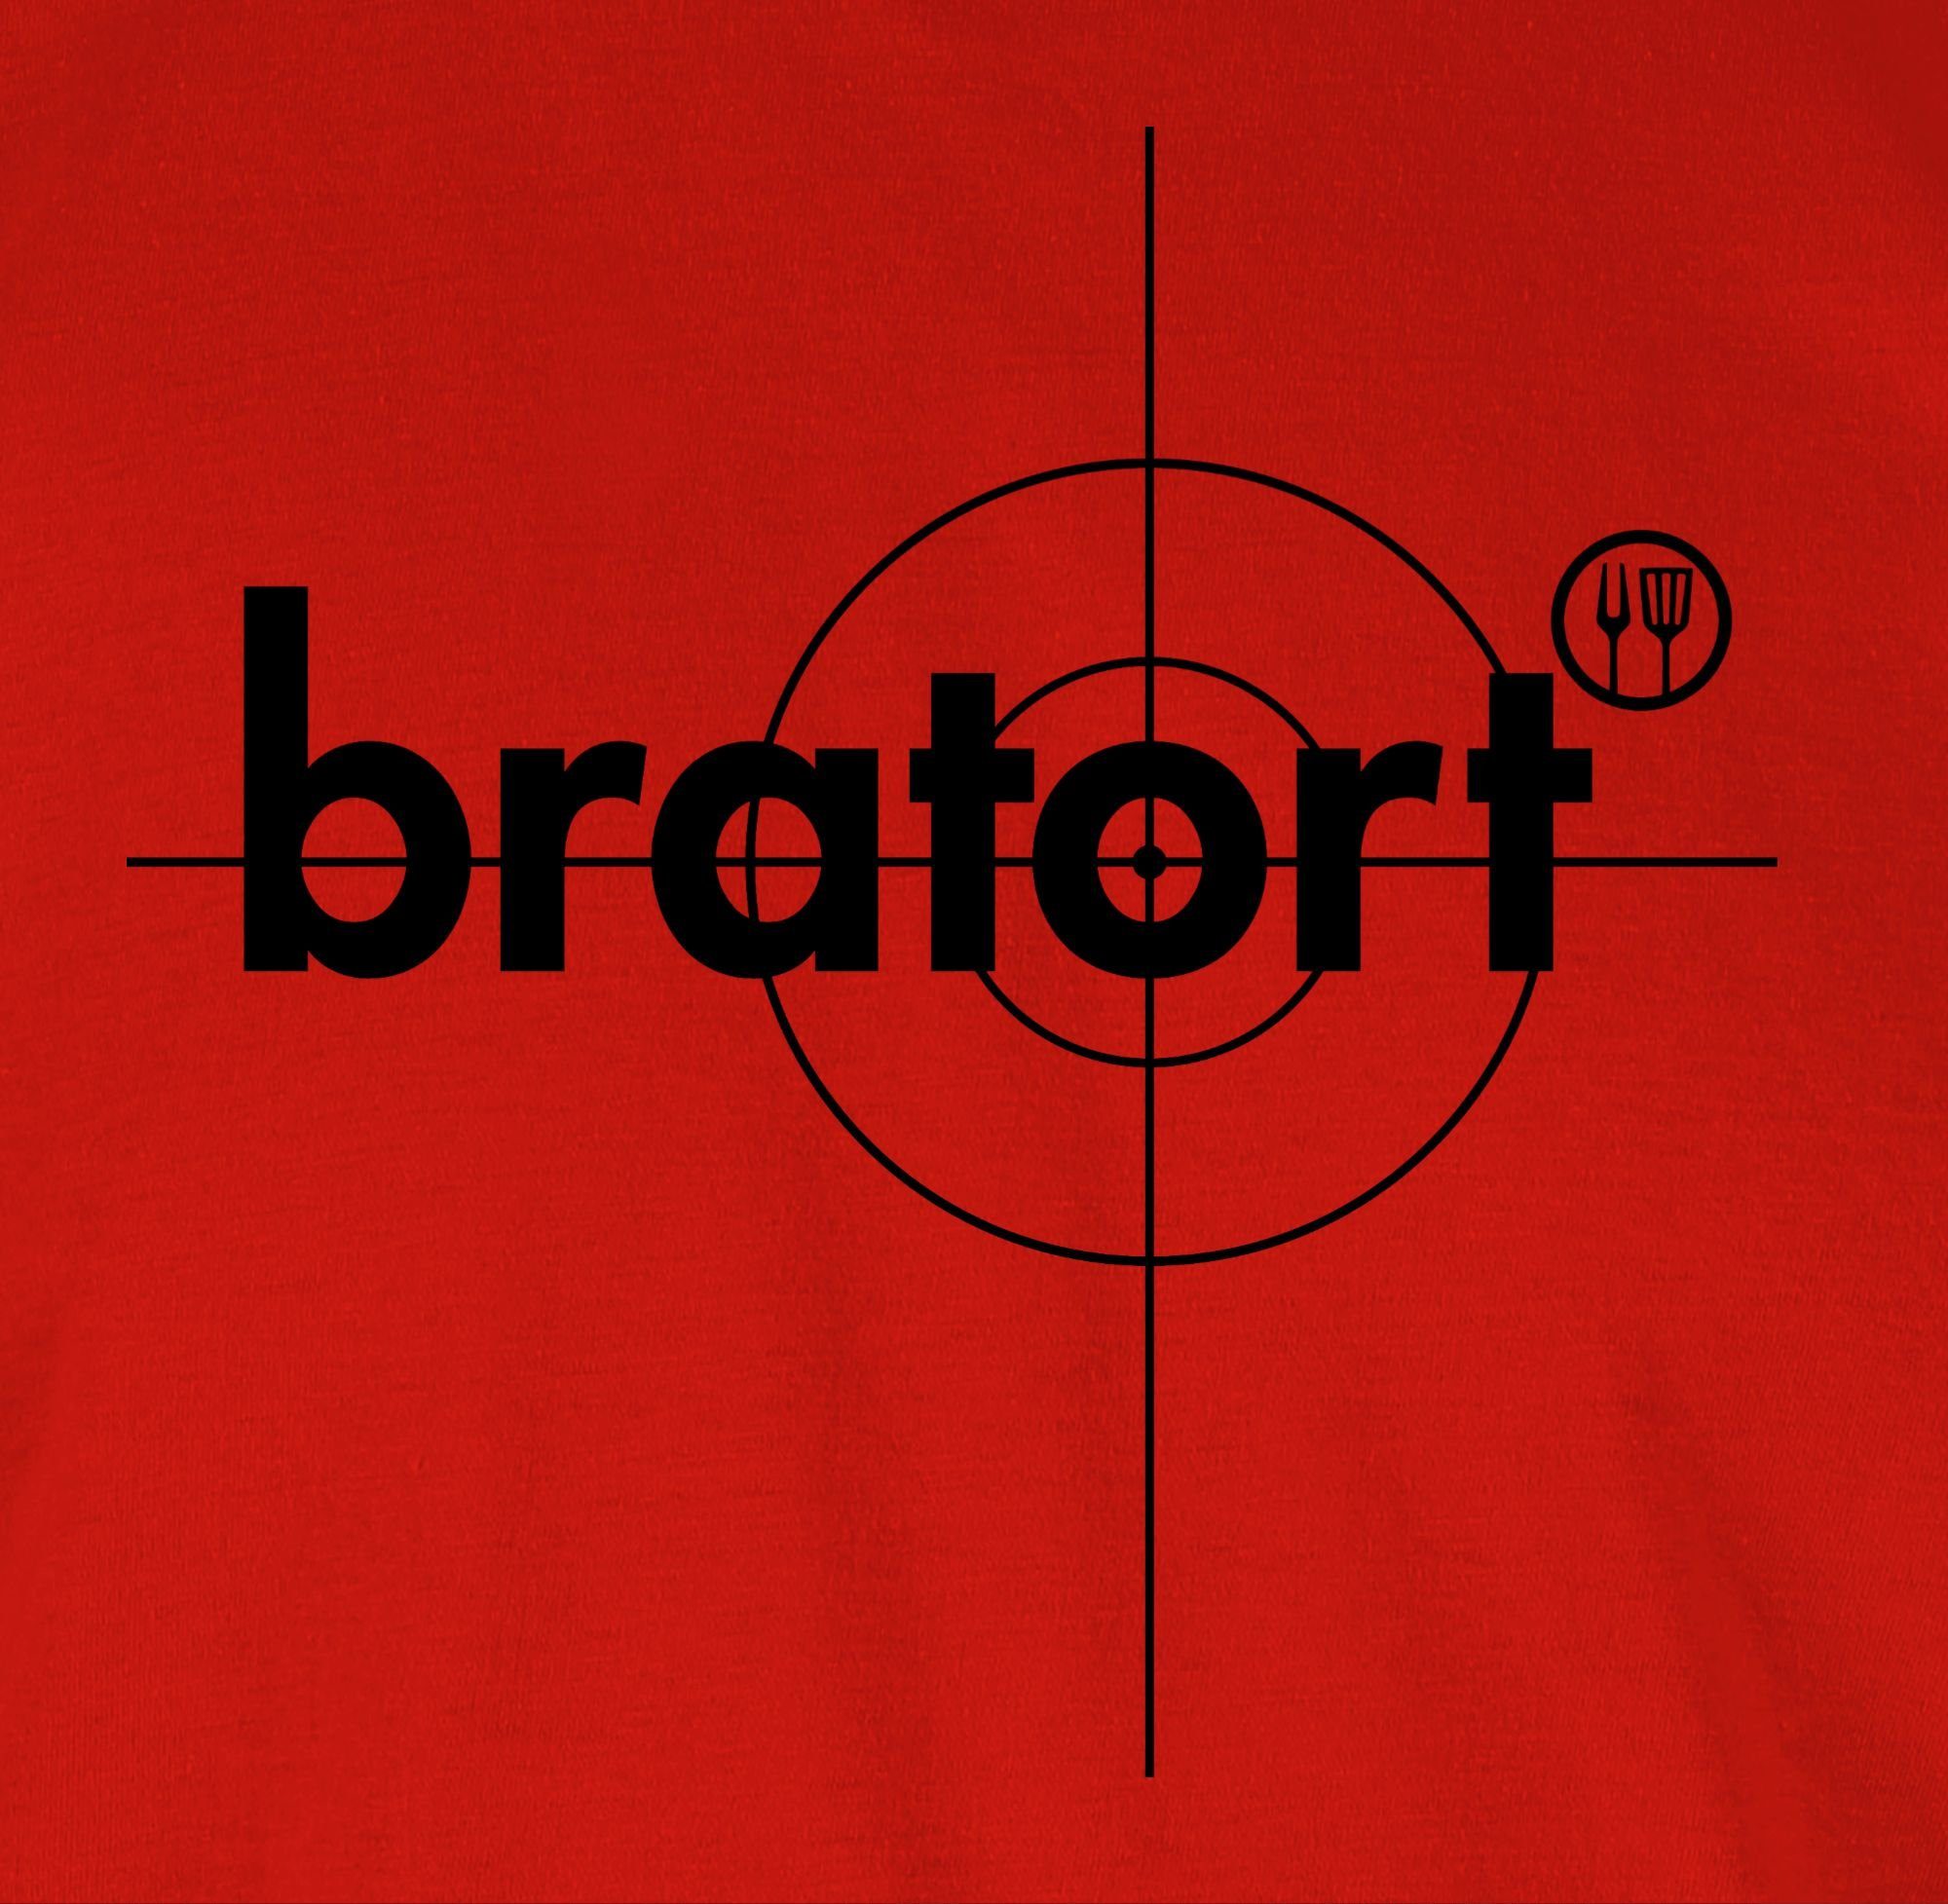 Bratort Rot Shirtracer T-Shirt Grillen Geschenk 3 & Grillzubehör